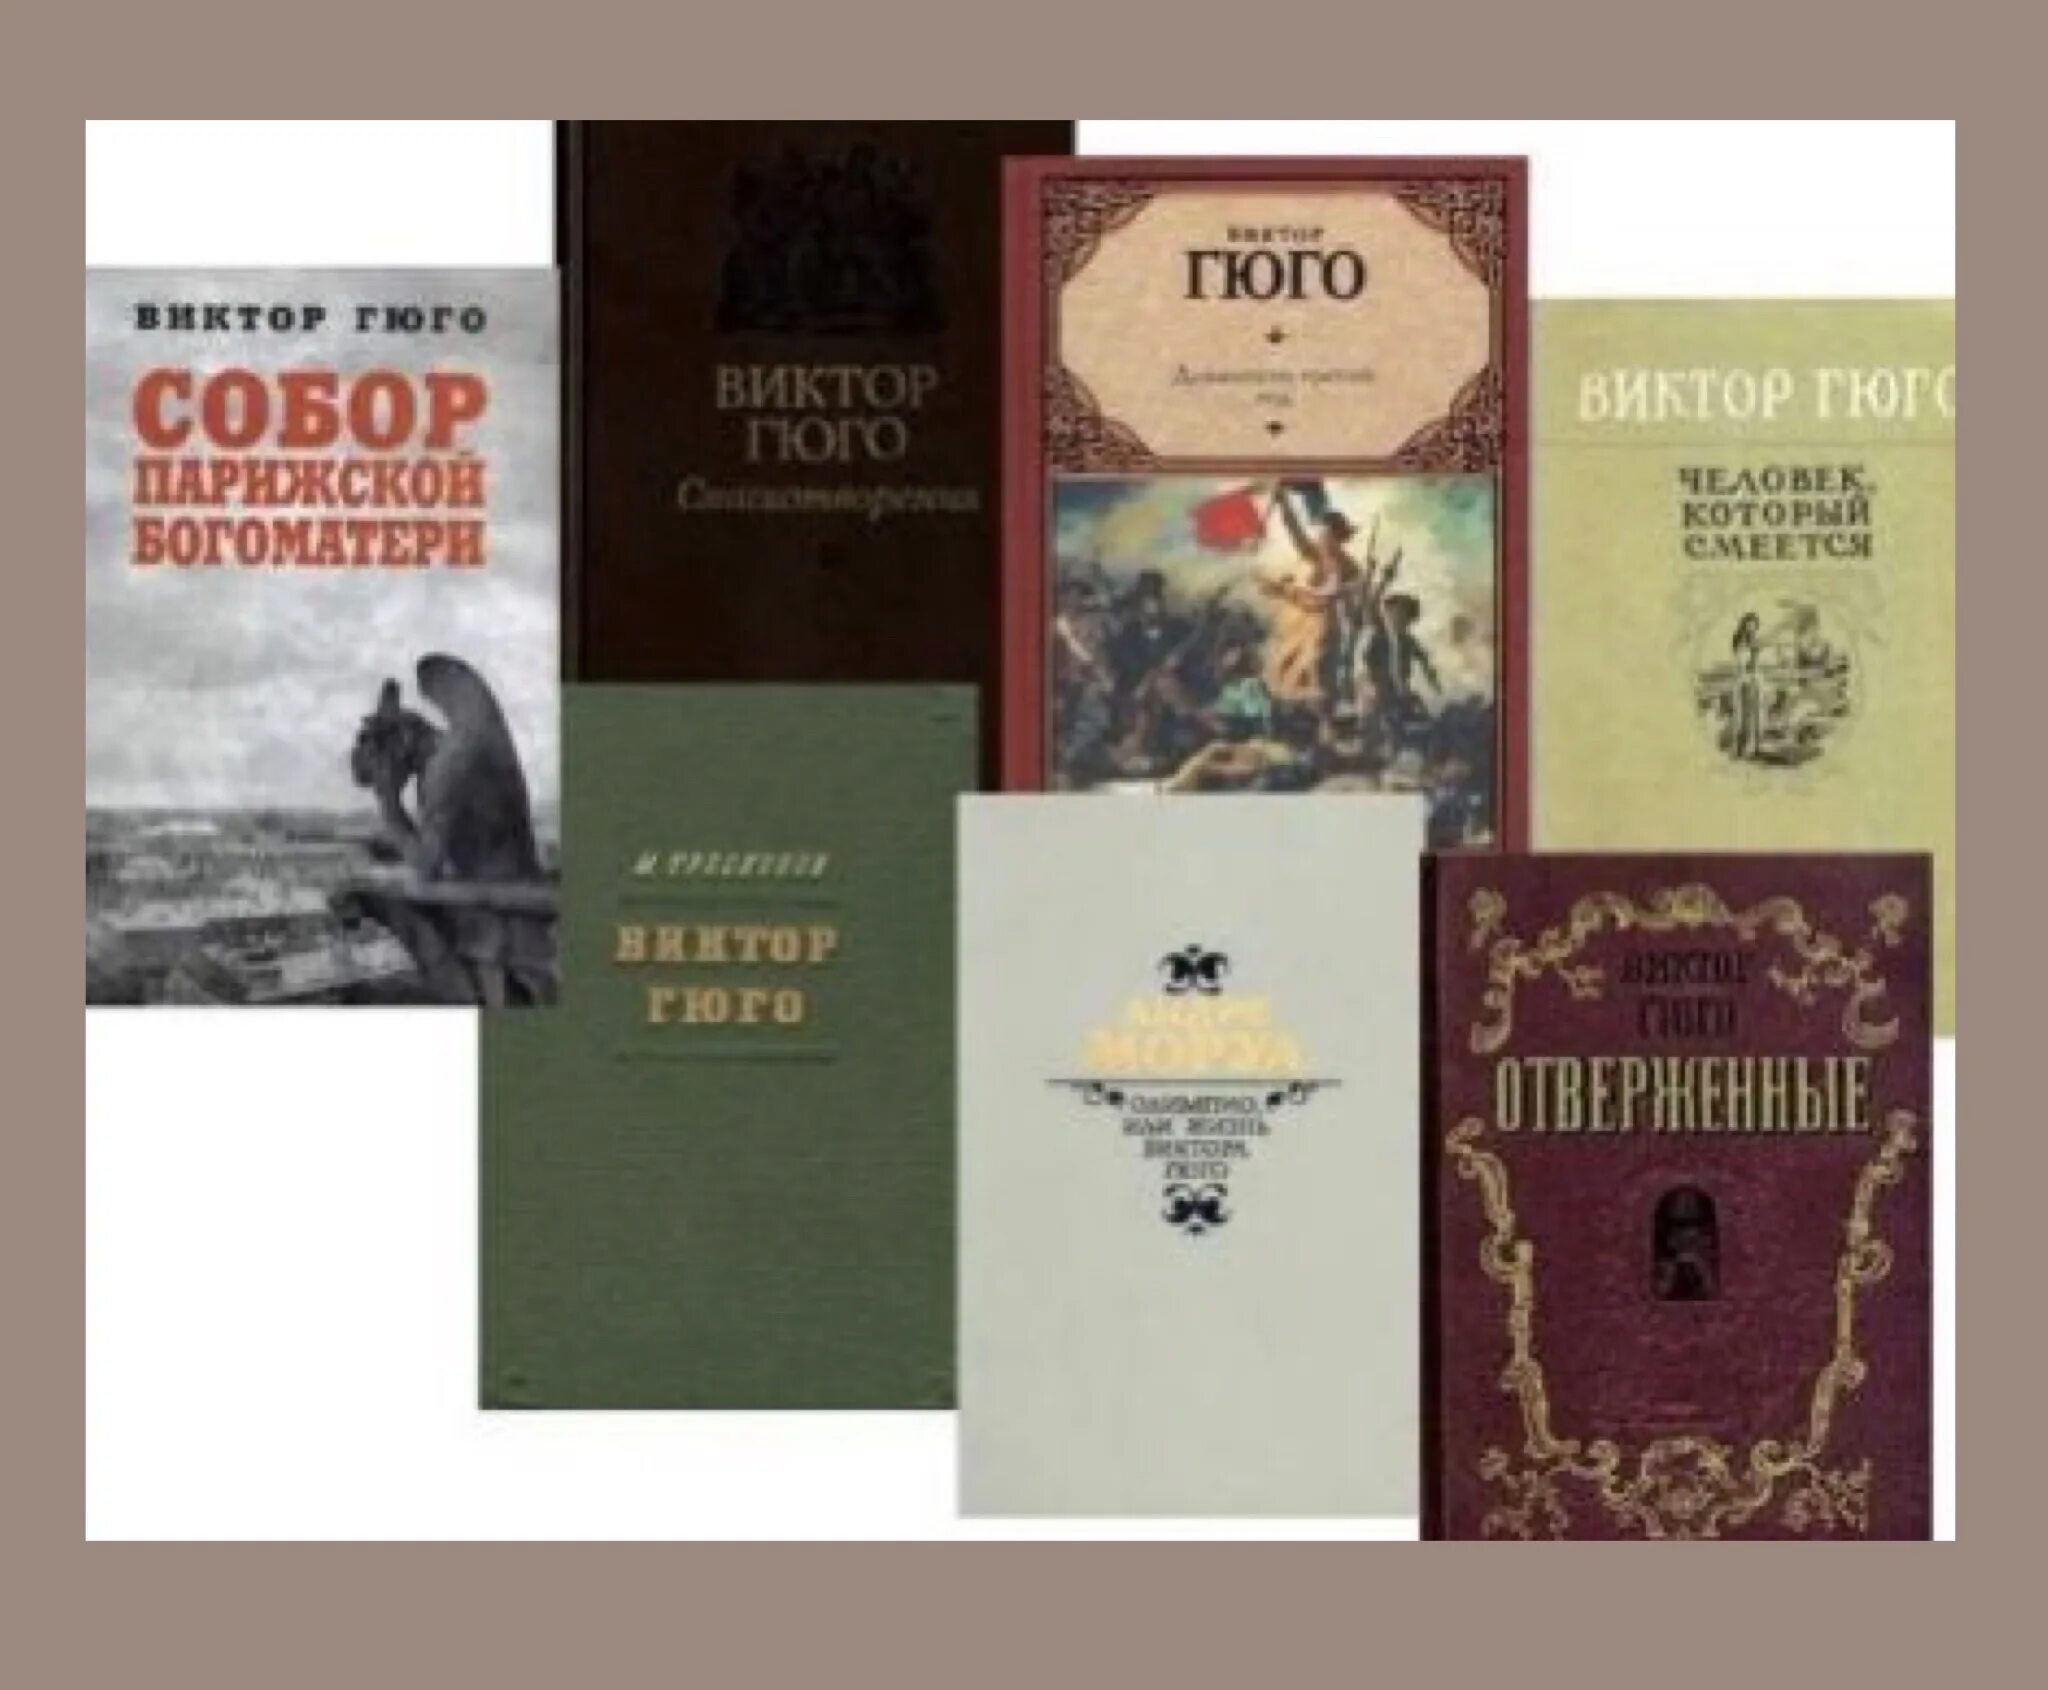 Книжная выставка о Викторе Гюго. Произведения Гюго самые известные. Лист известные произведения